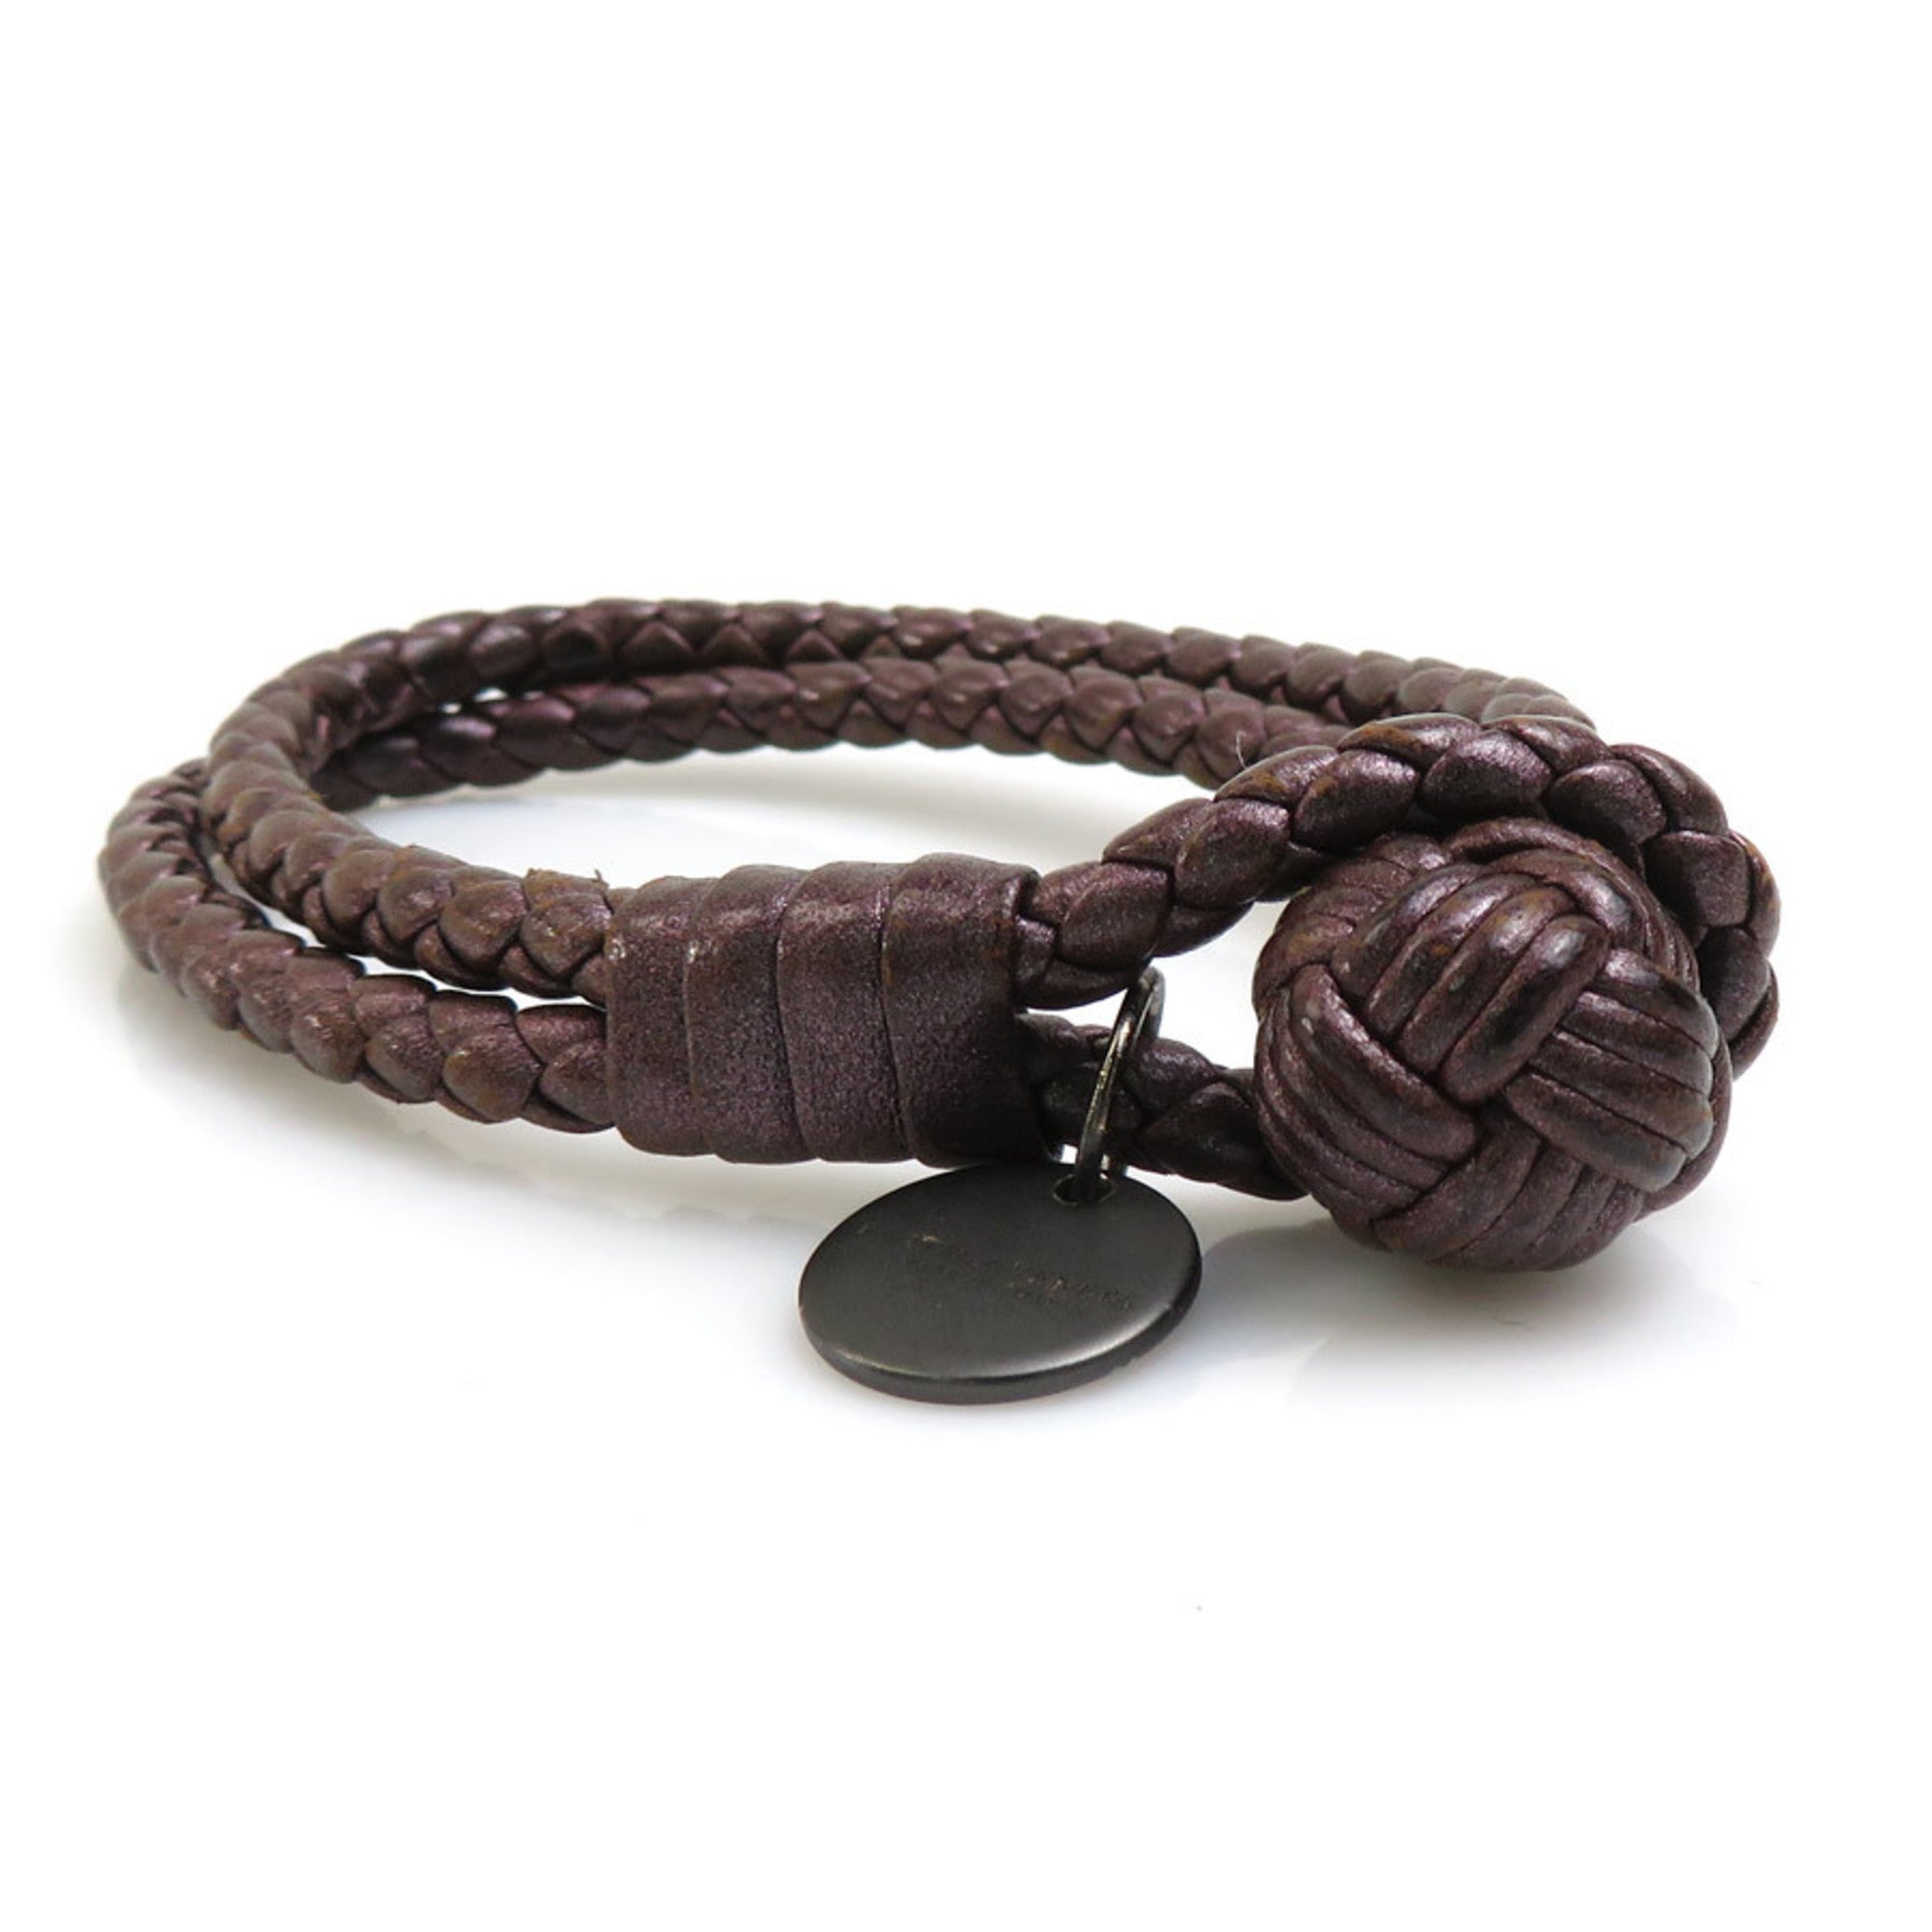 Sell Bottega Veneta Intrecciato Bracelet with Snakeskin - Black |  HuntStreet.com